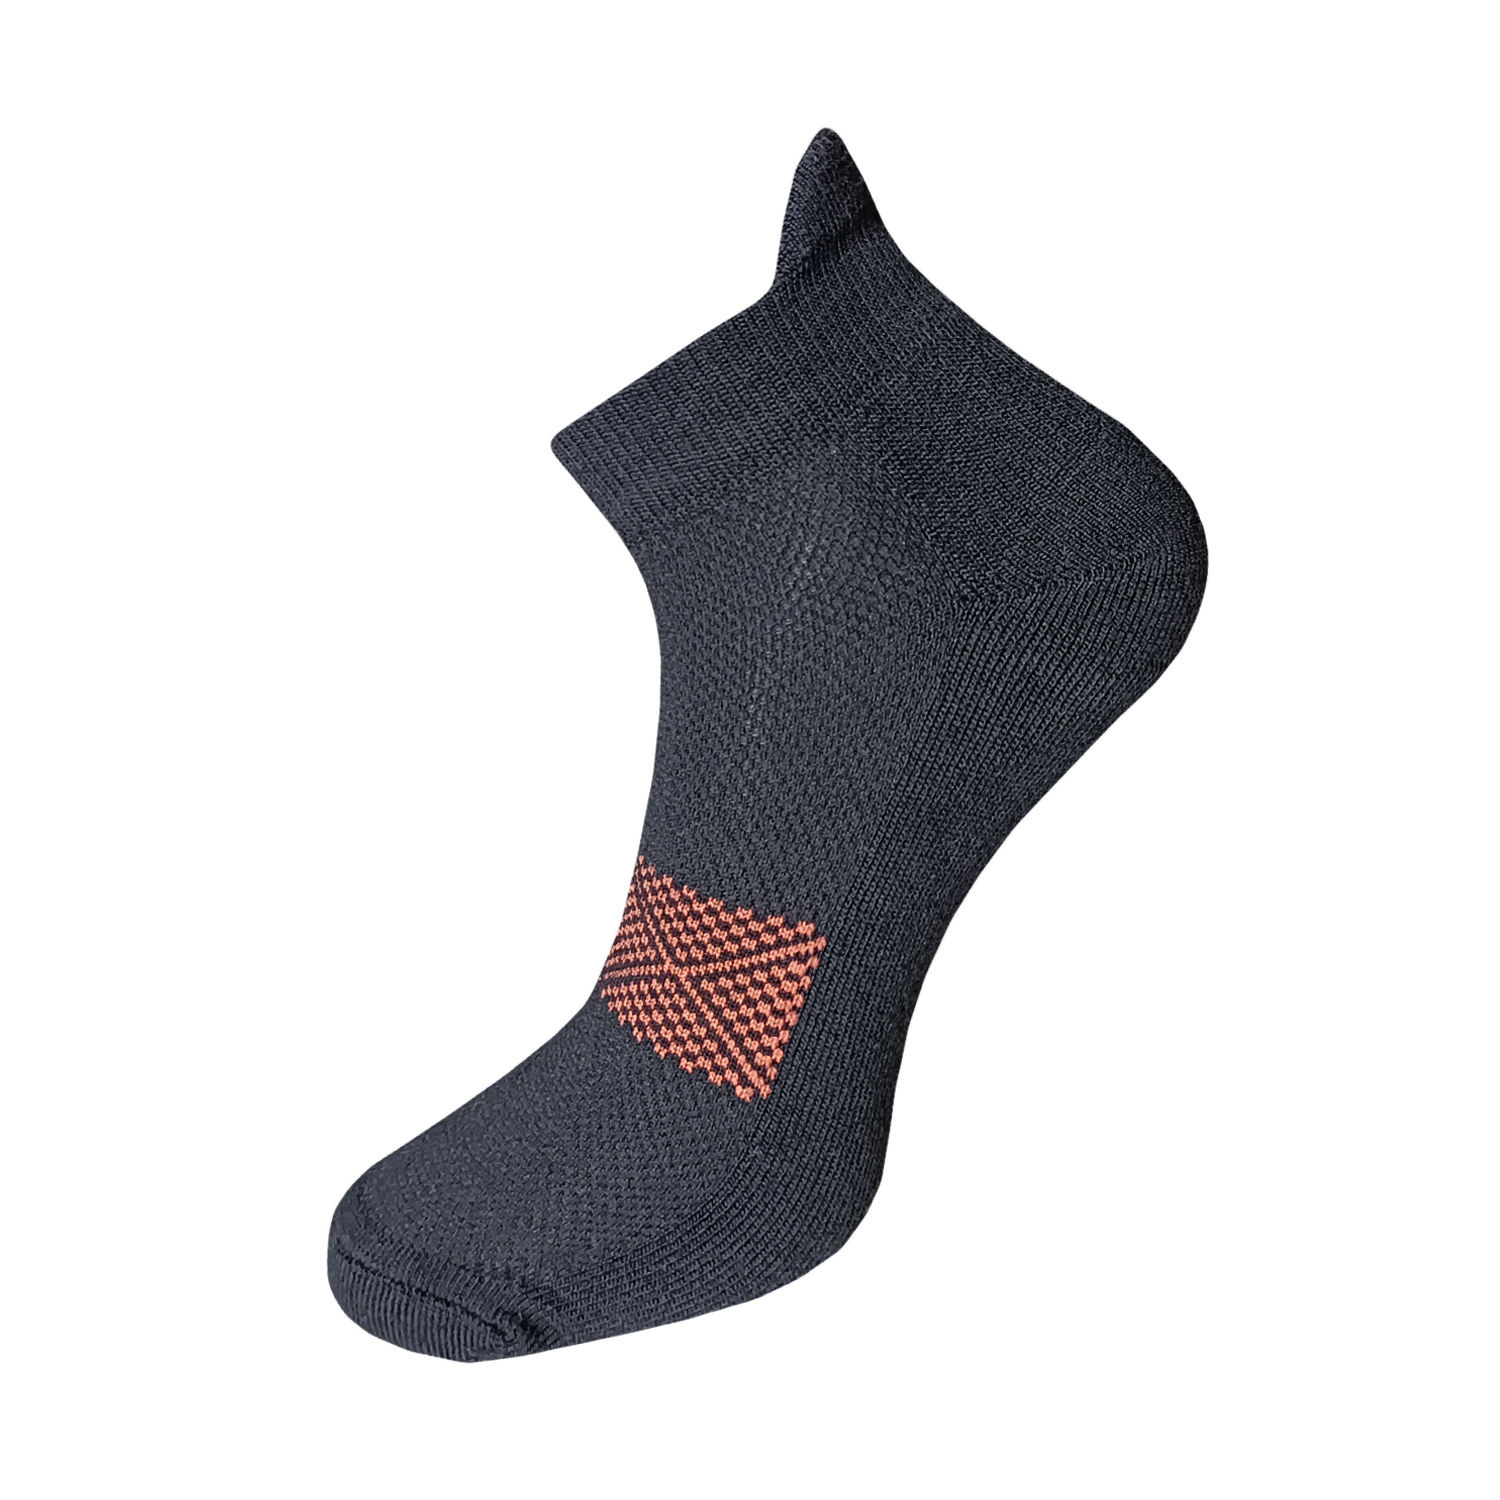 Ankle compression socks